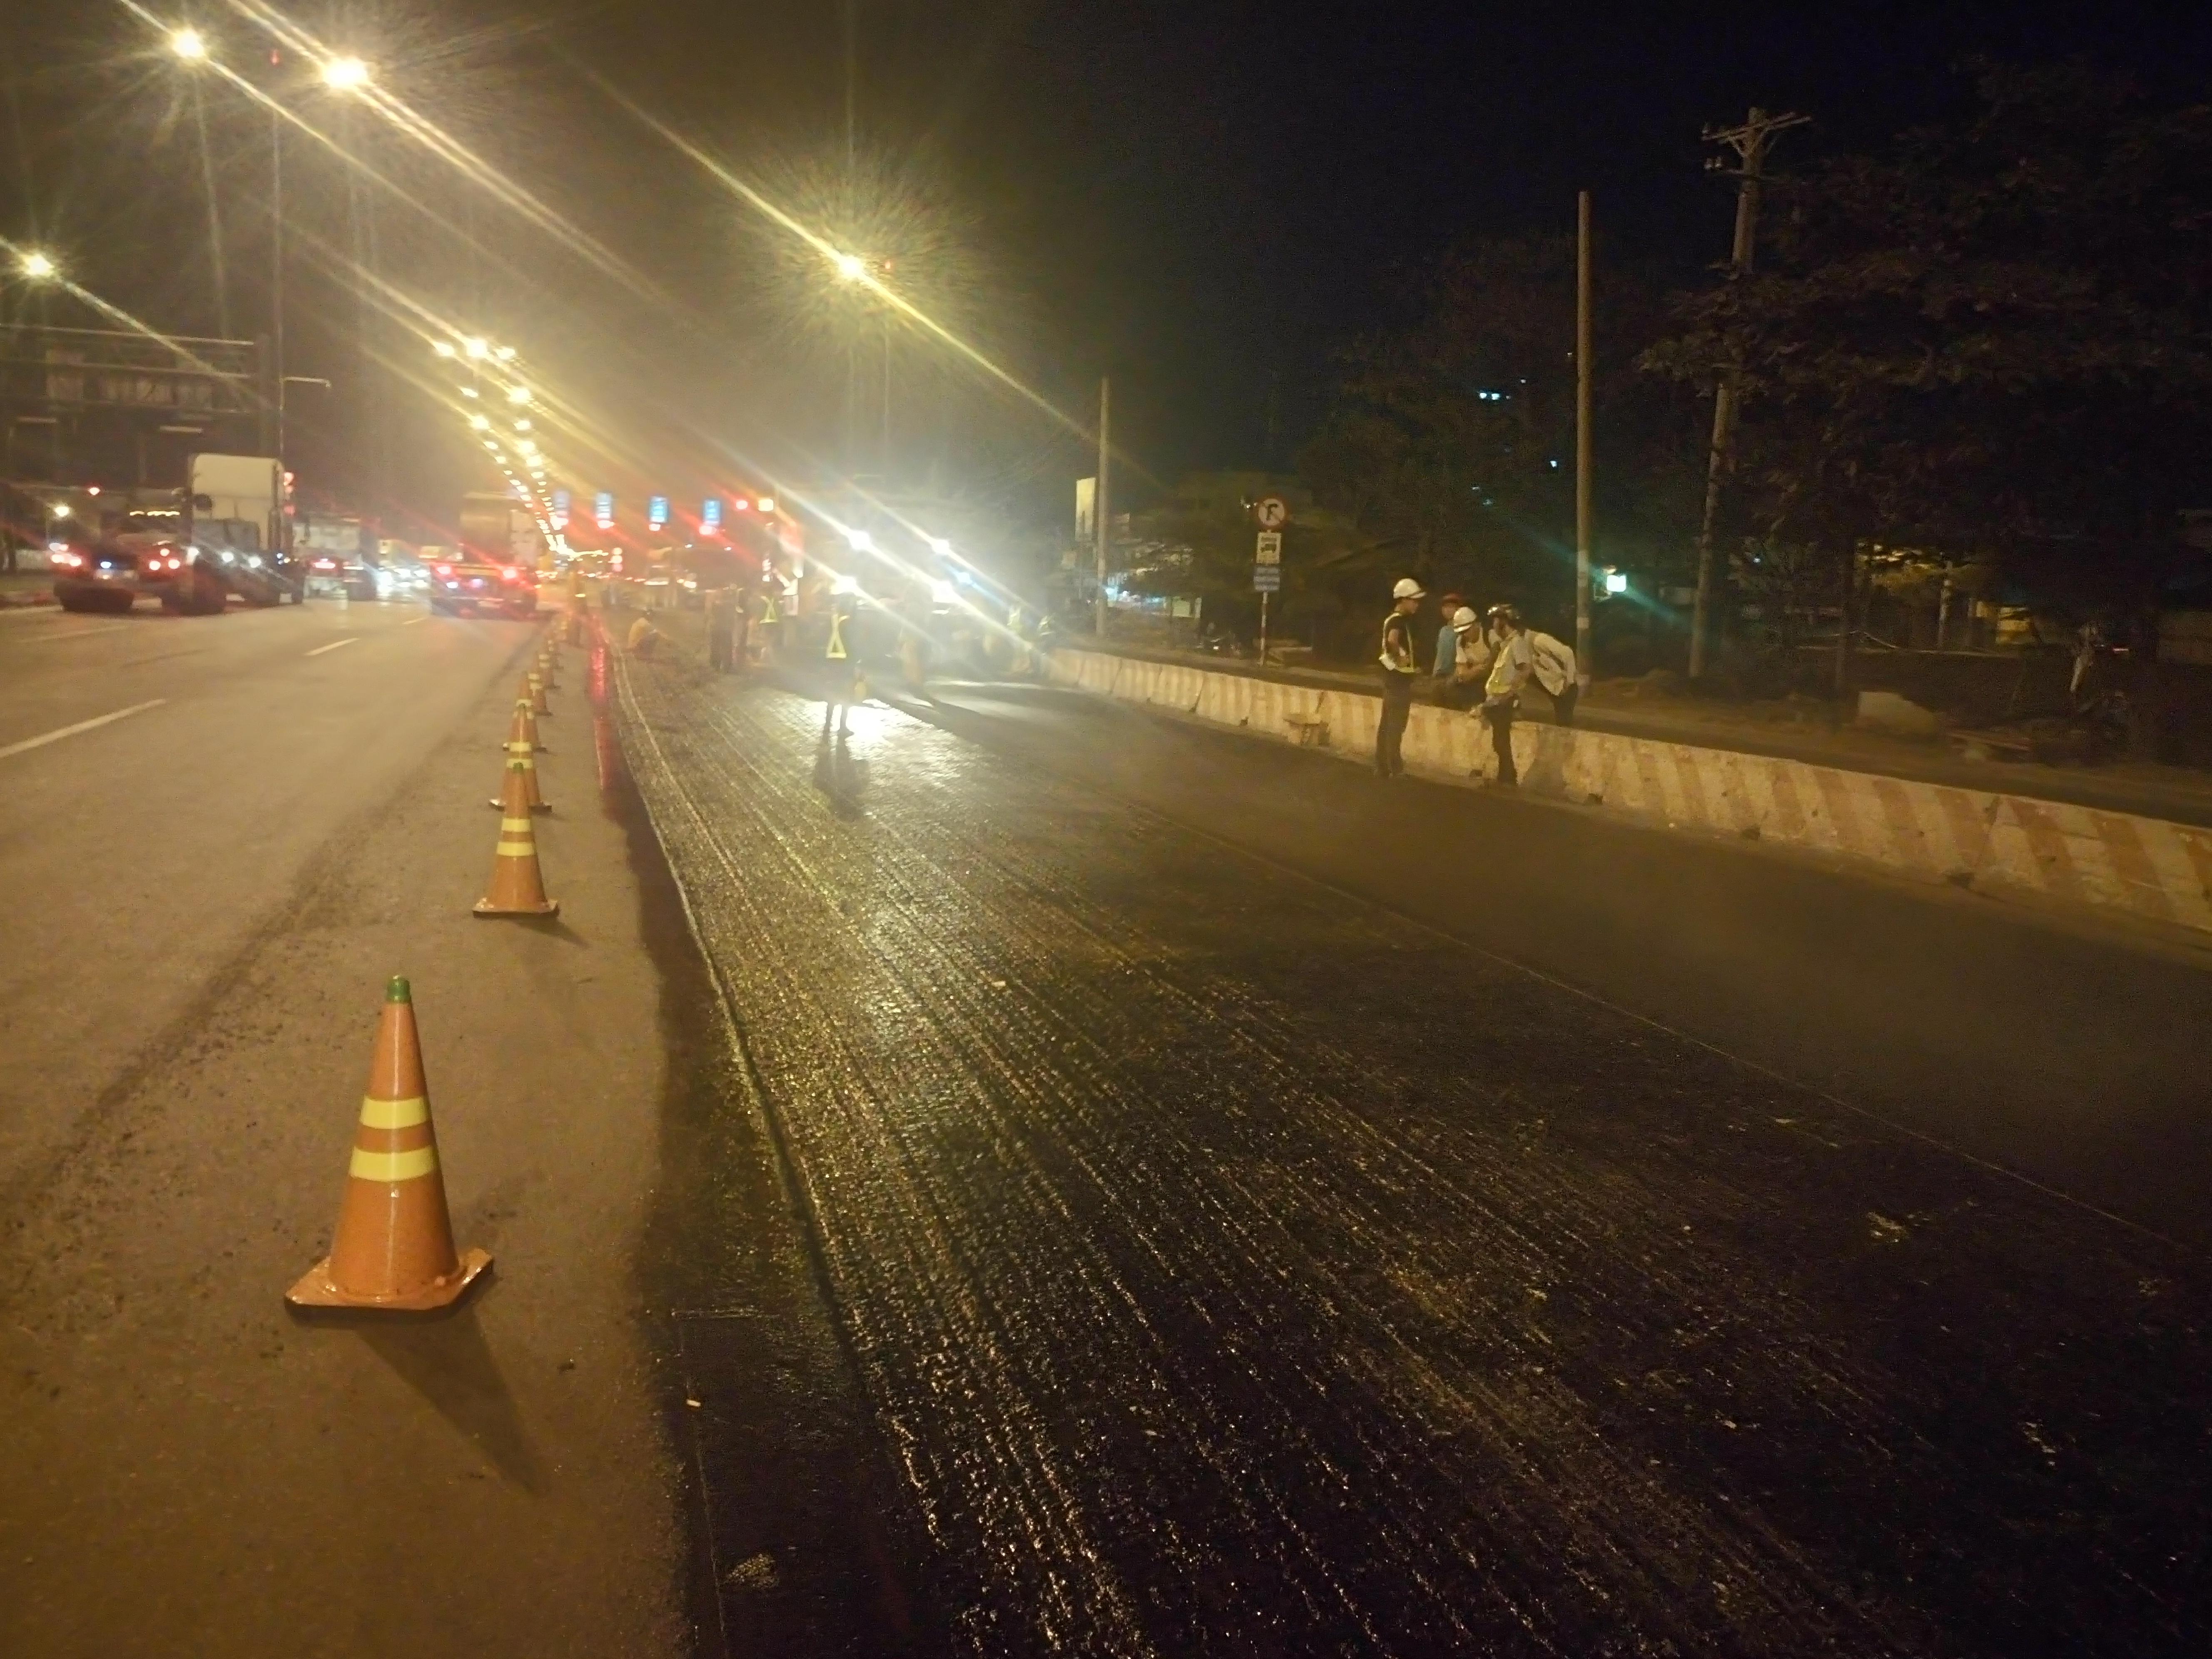 Duy tu, sửa chữa mặt đường bê tông nhựa đường chính Xa lộ Hà Nội (Đoạn từ cầu Sài Gòn đến cầu Vượt thép Thủ Đức)